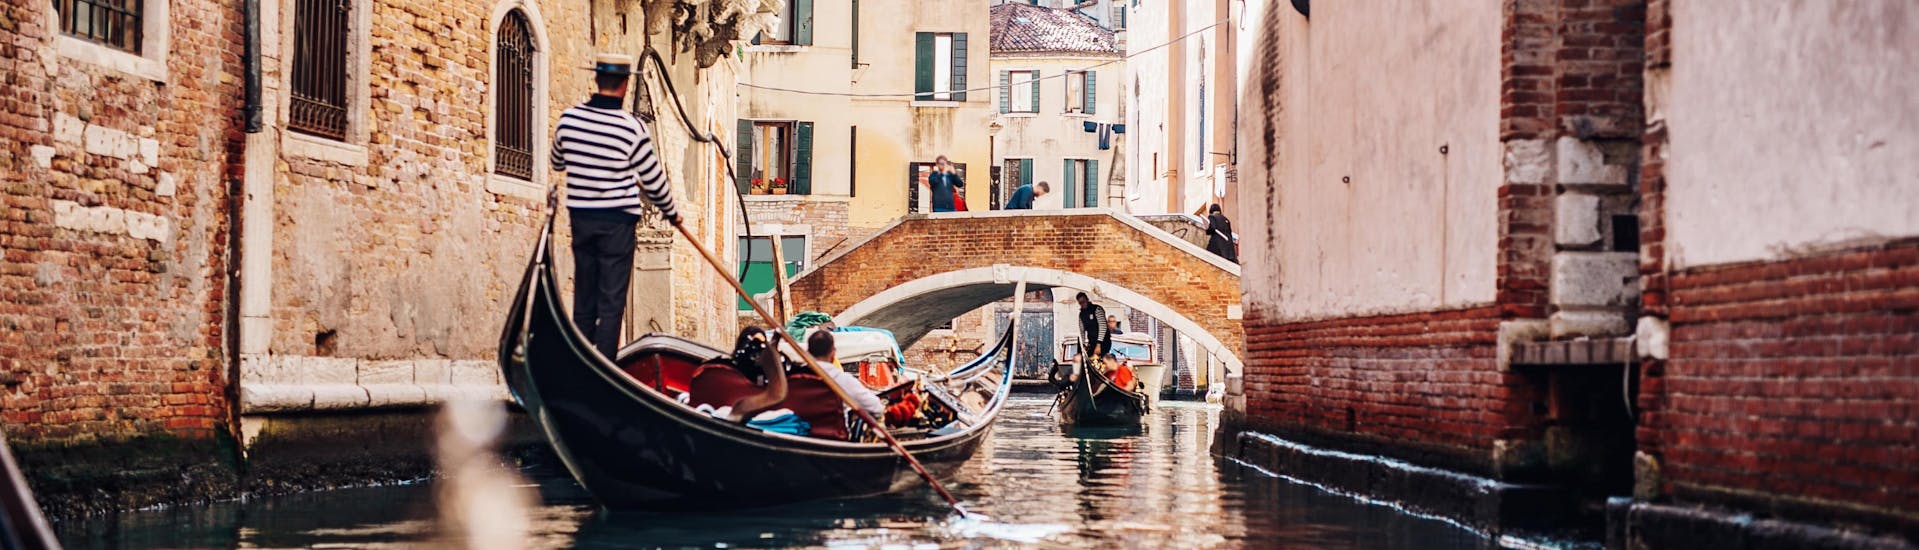 Un gondoliere sta remando attraverso uno stretto canale durante un giro in gondola a Venezia.